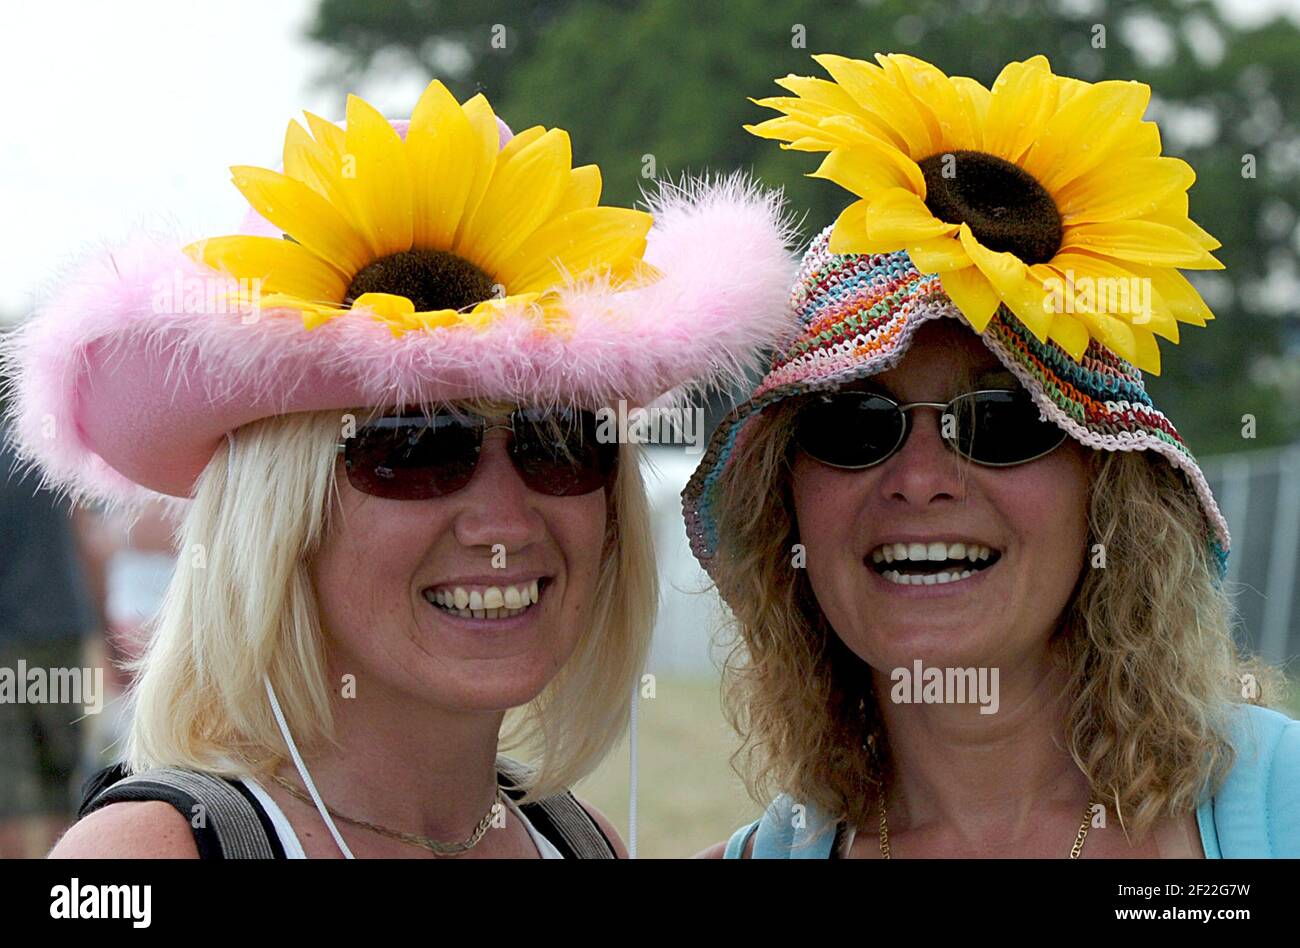 Les fans de rock Trudi Bridgeman et Lisa Ciampa reviennent à l'époque de la puissance des fleurs au Festival de l'île de Wight. pic Mike Walker, 2007 Banque D'Images